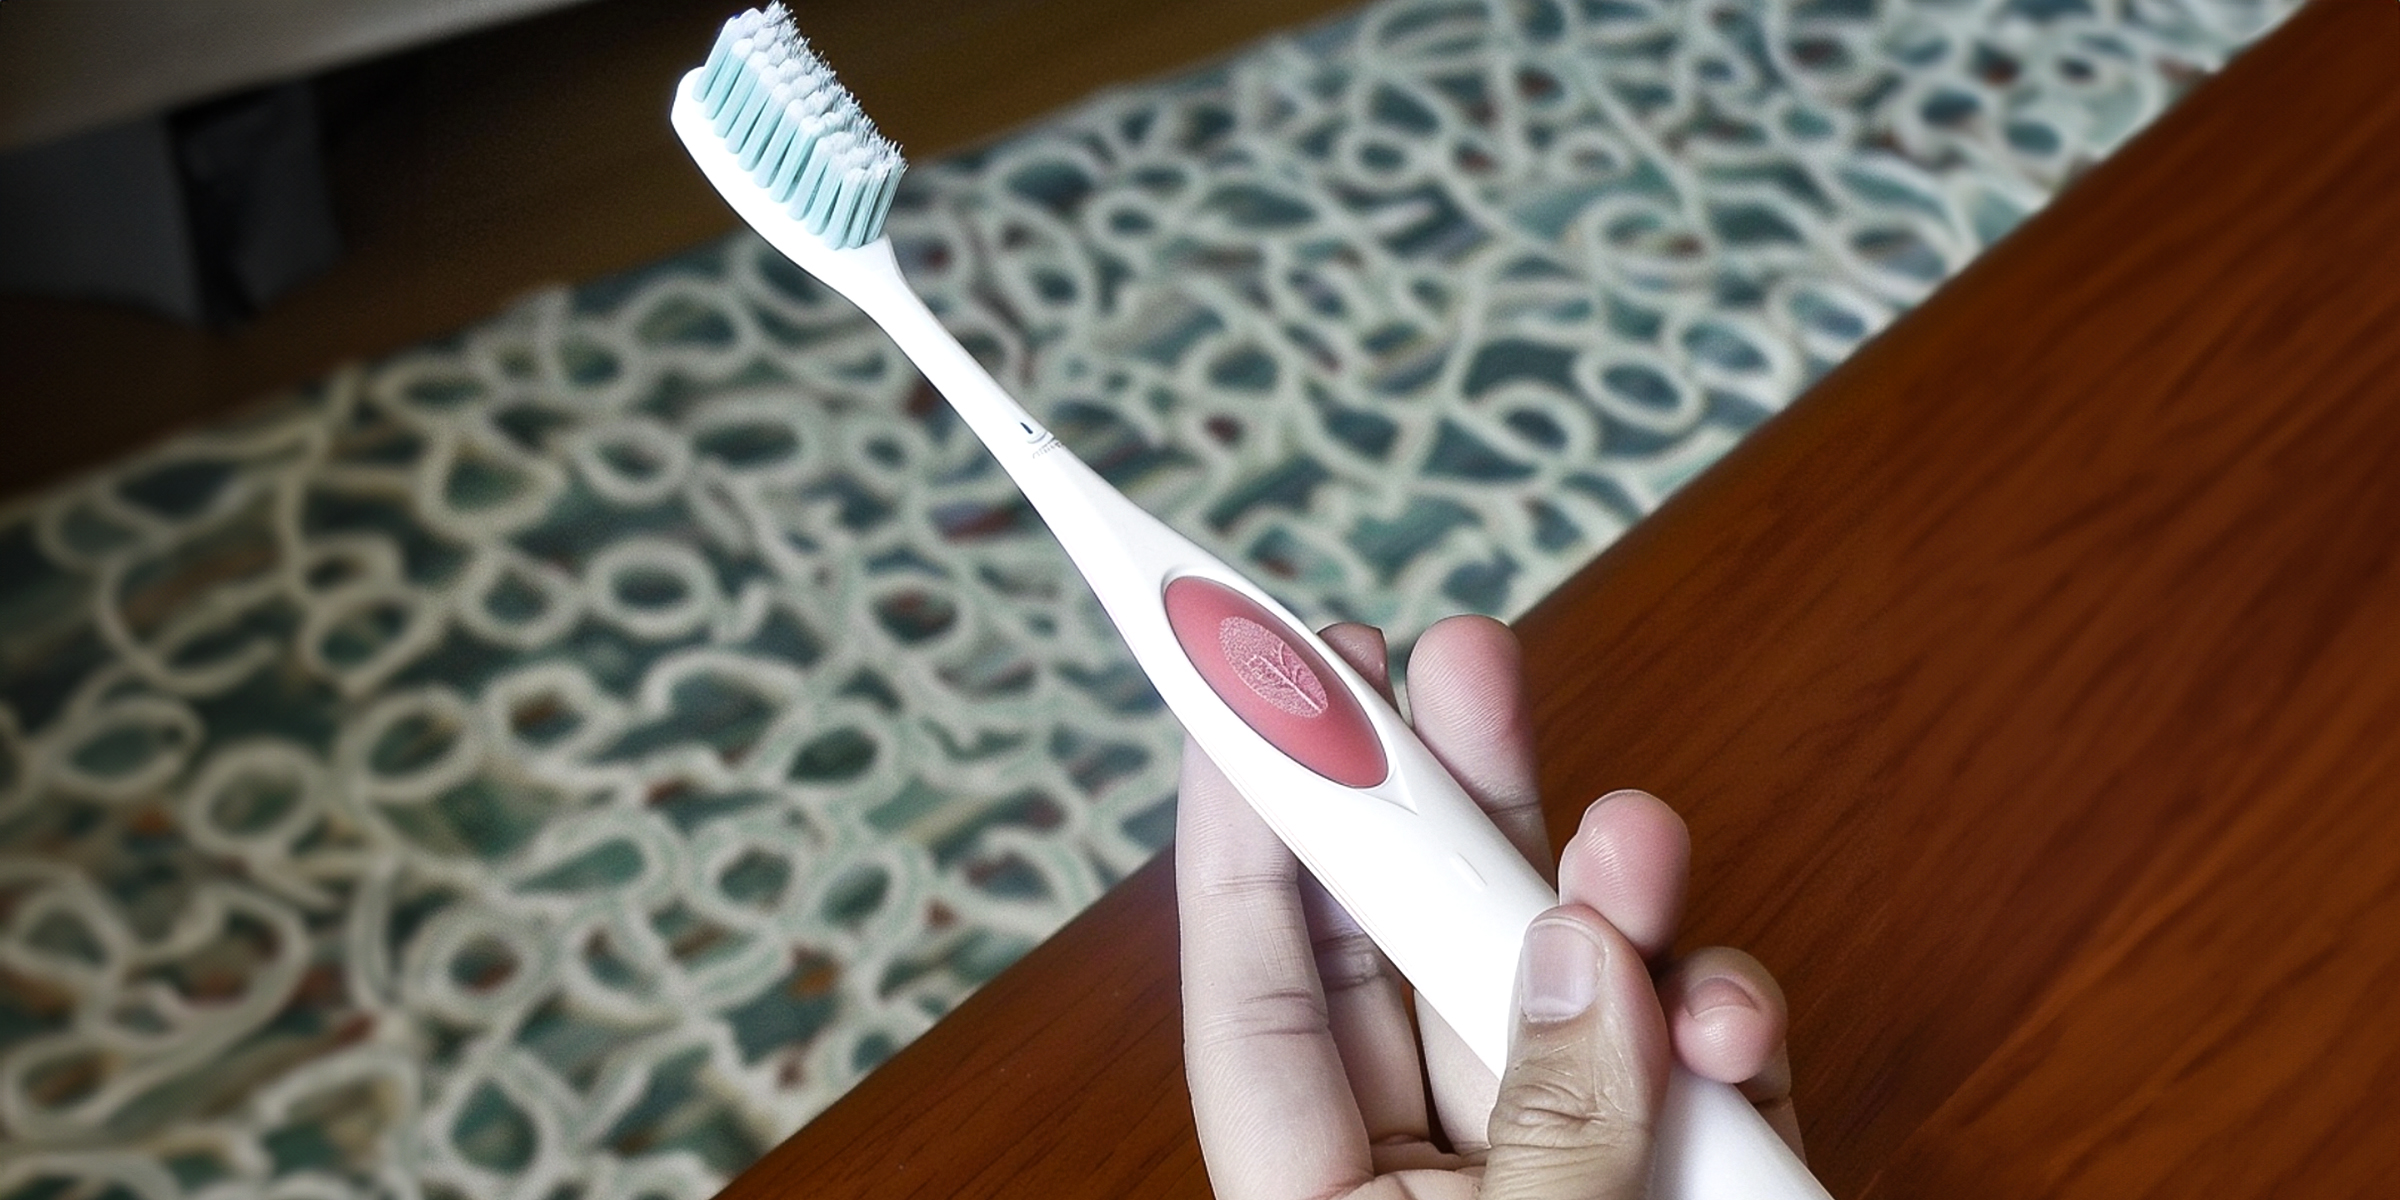 Alguien sujetando un cepillo de dientes | Fuente: Amomama